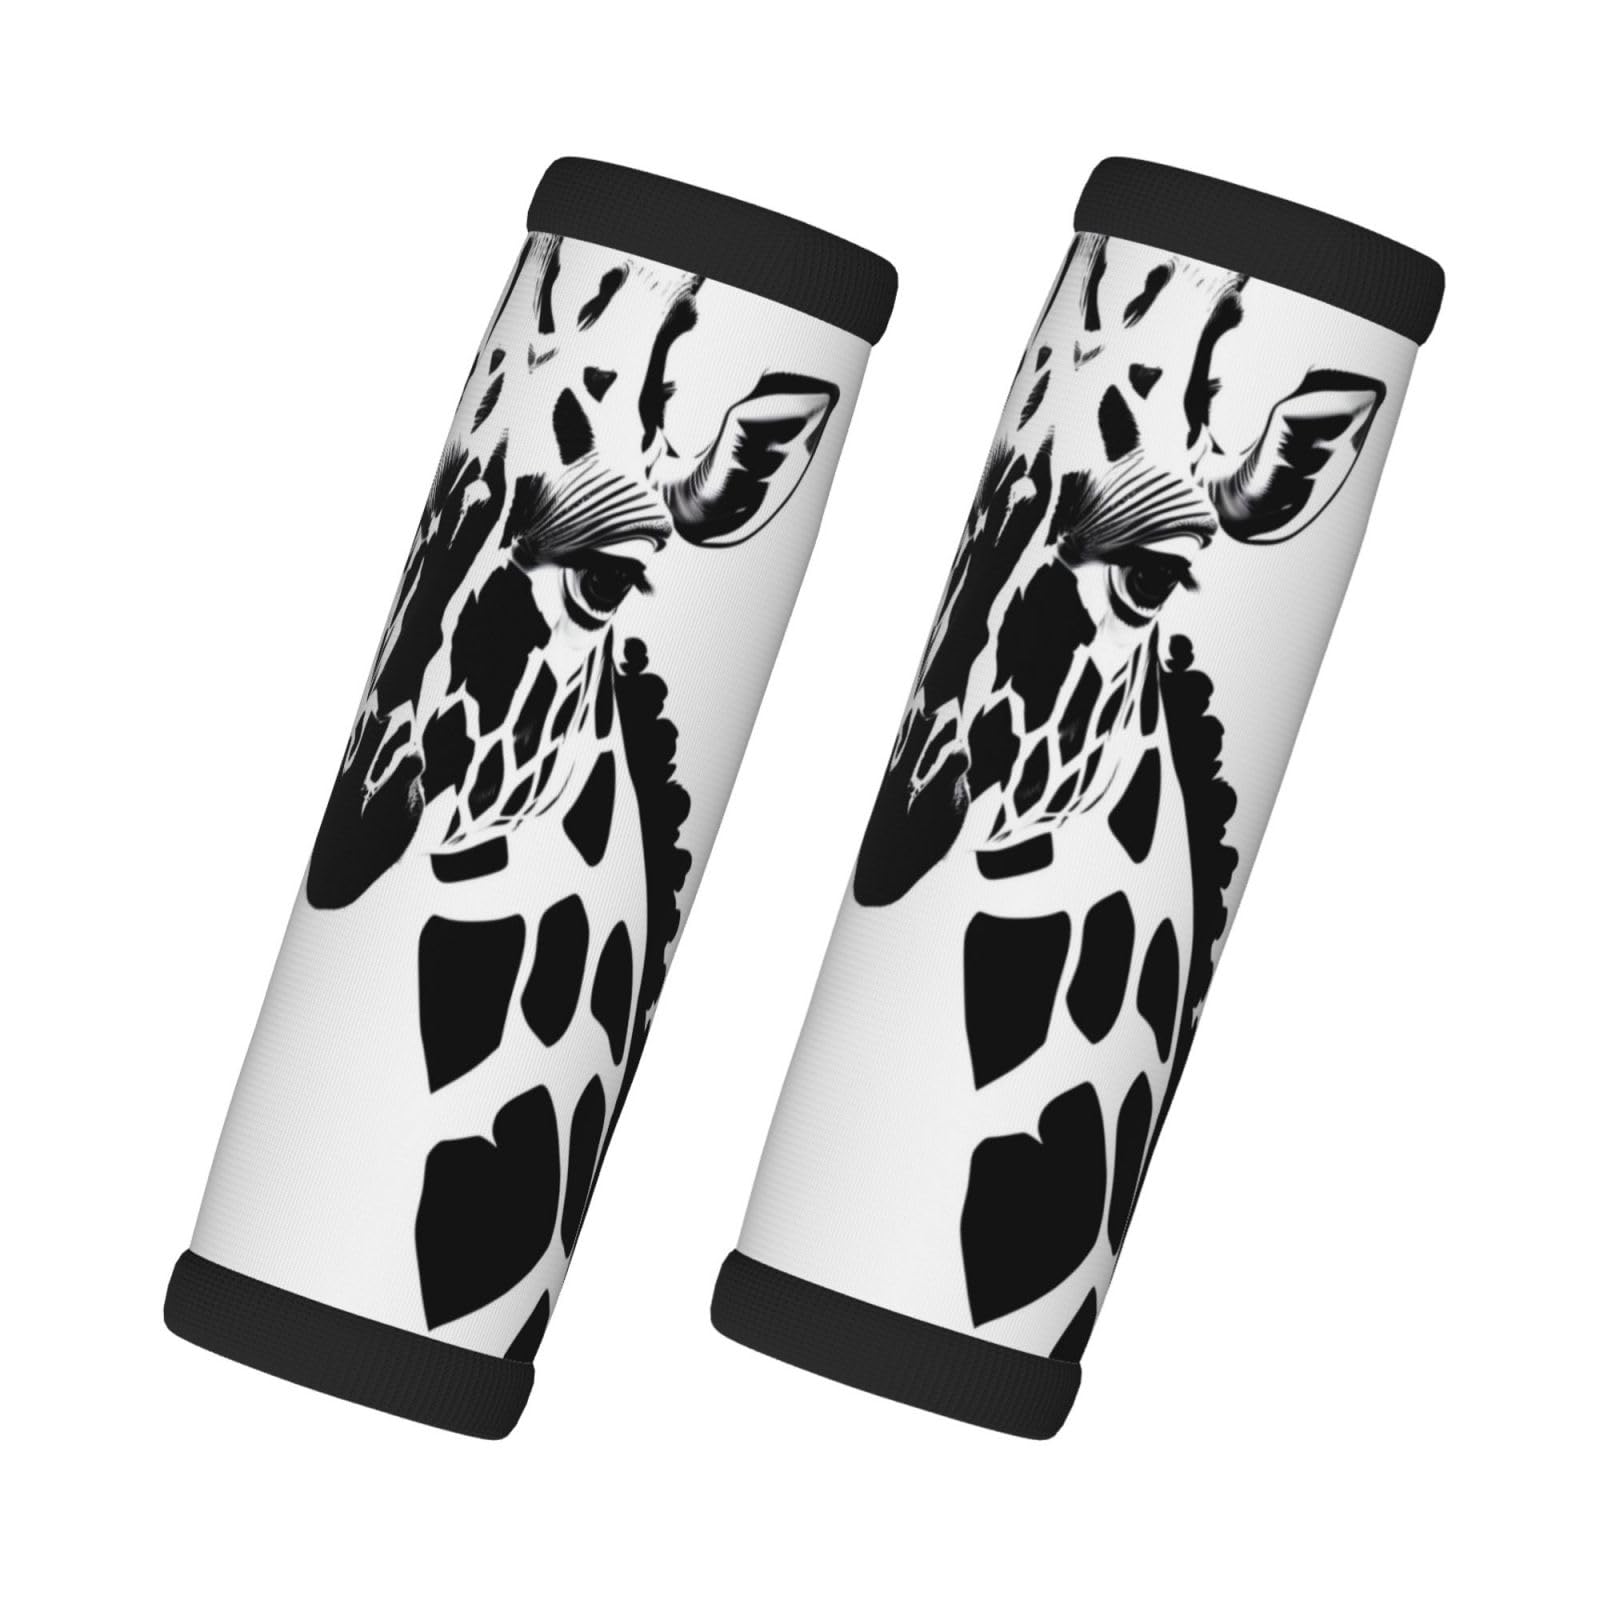 Schwarze und weiße Giraffen-Premium-Gepäckgriffabdeckungen (2 Stück) – Chloropren-Kautschuk-Material von XZDHL